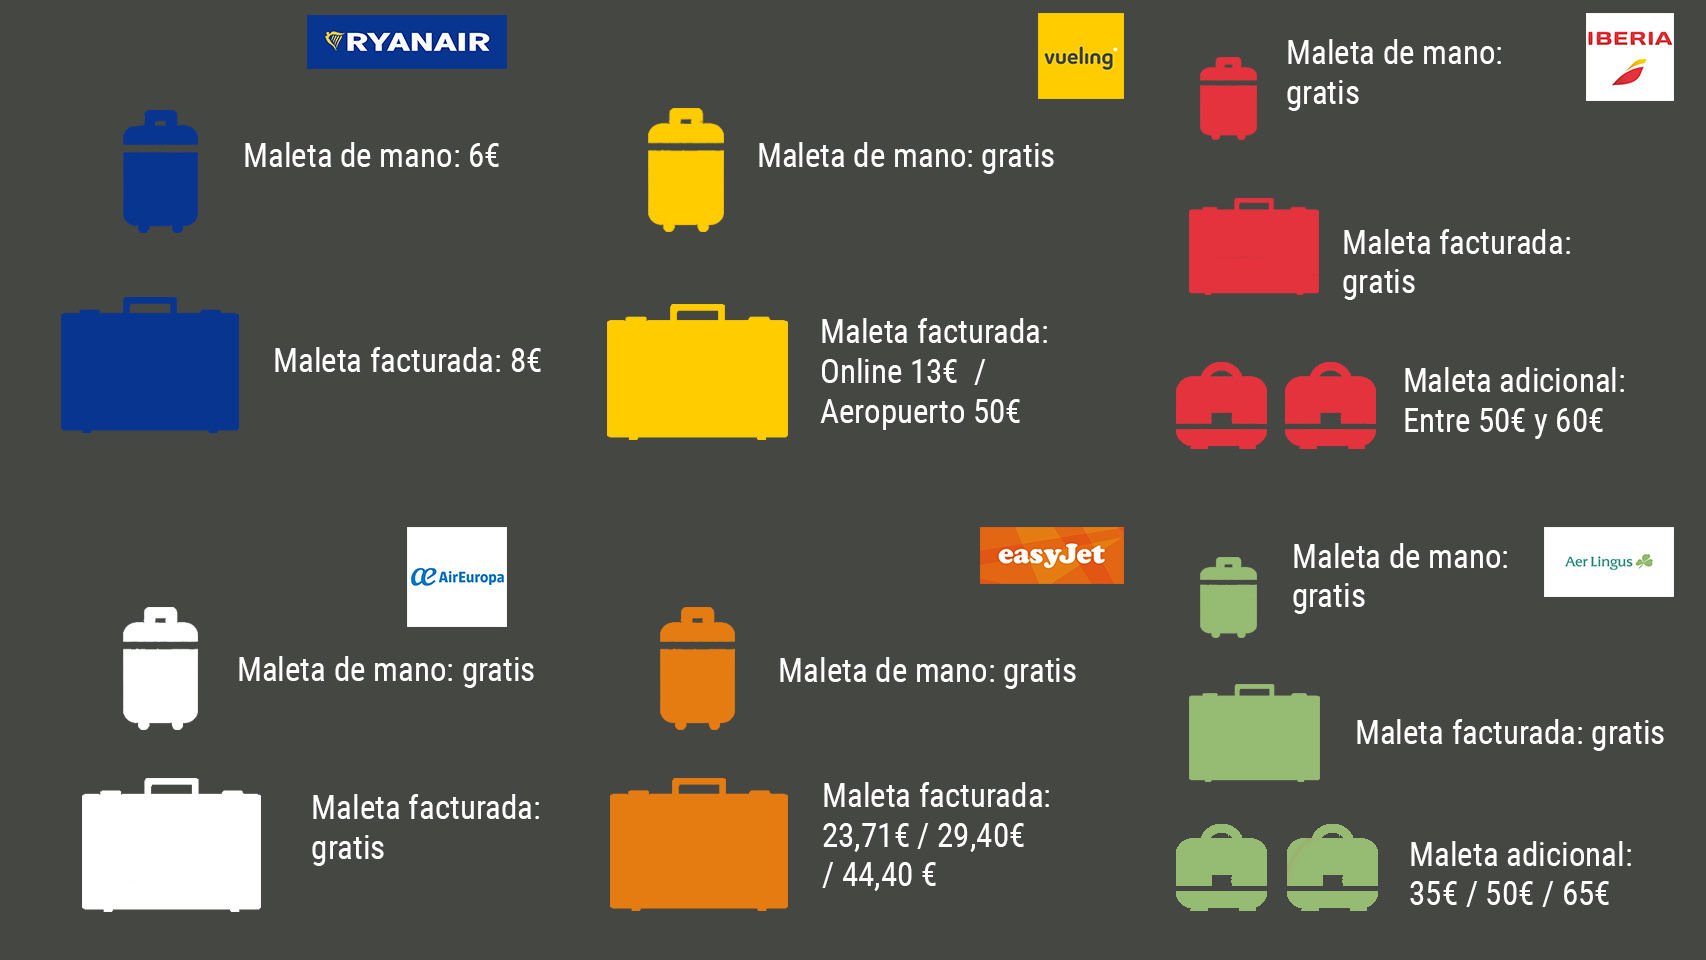 \ EL ESPAÑOL على تويتر: "Raynair, la ex low cobrar 6 euros el equipaje de mano “es ilícito” https://t.co/vEa96MKkRx https://t.co/zGPHfIiL2O"